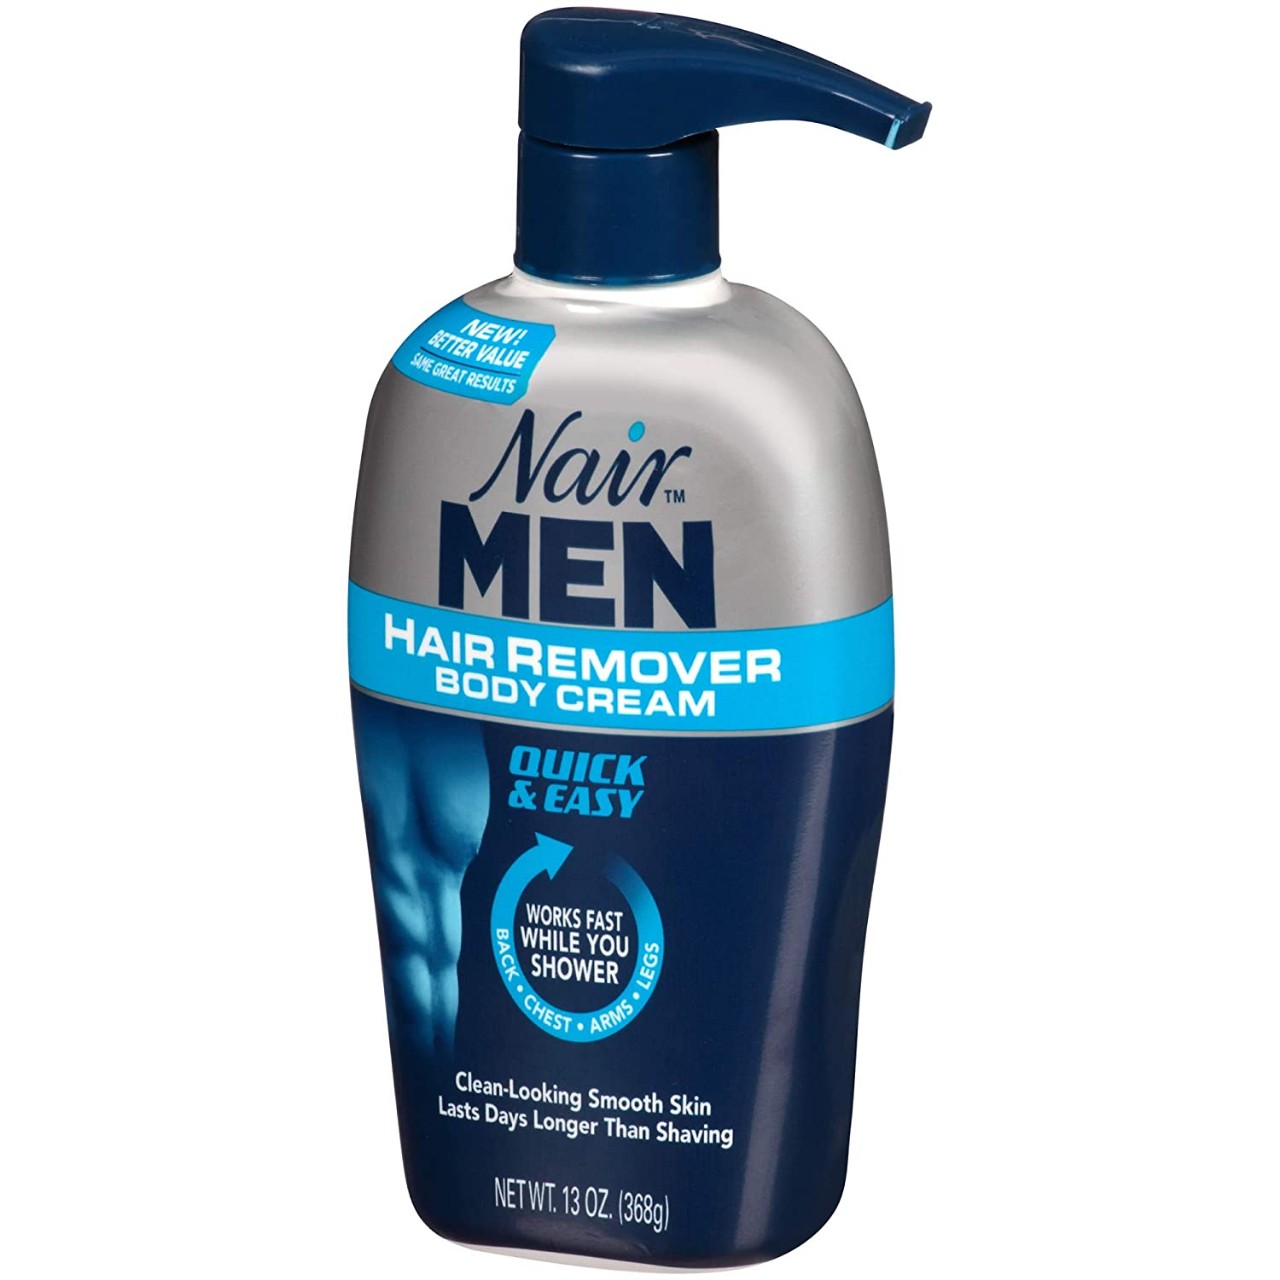 Nair Hair Remover for Men Hair Remover Body Cream, 13 oz